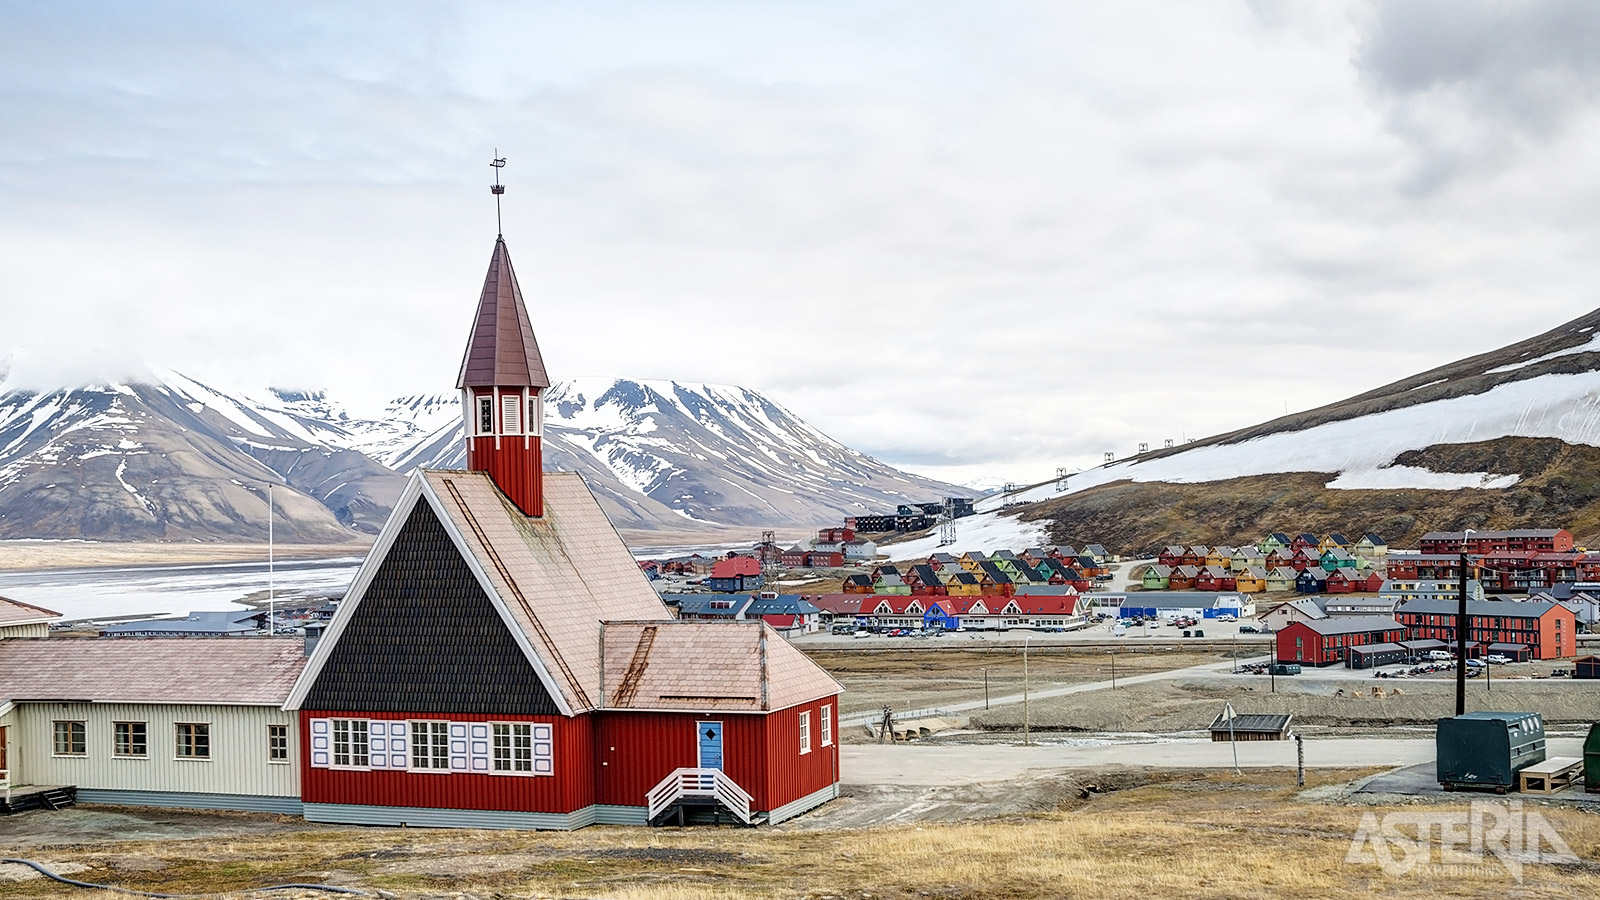 Op amper 5 minuten wandelen van de hoofdstraat van Longyearbyen vind je de rode Svalbard Kirke